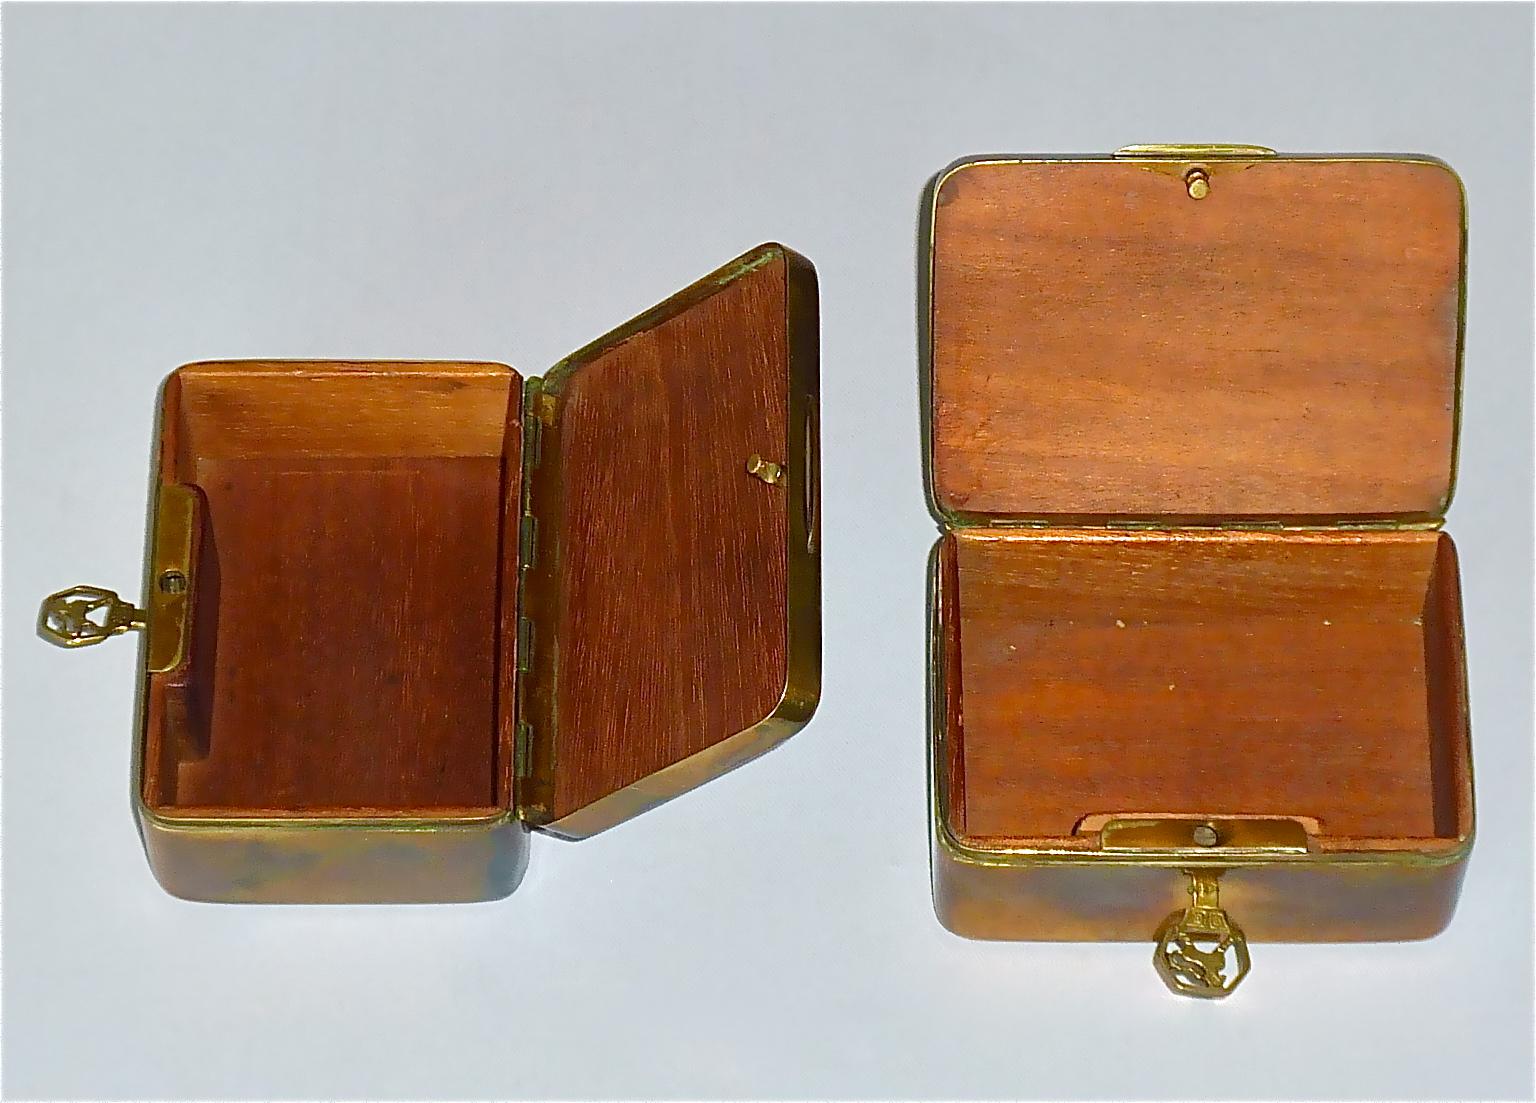 Pair Signed Erhard Sohne Trinket Casket Box Casket Original Keys Brass Wood 1900 For Sale 1